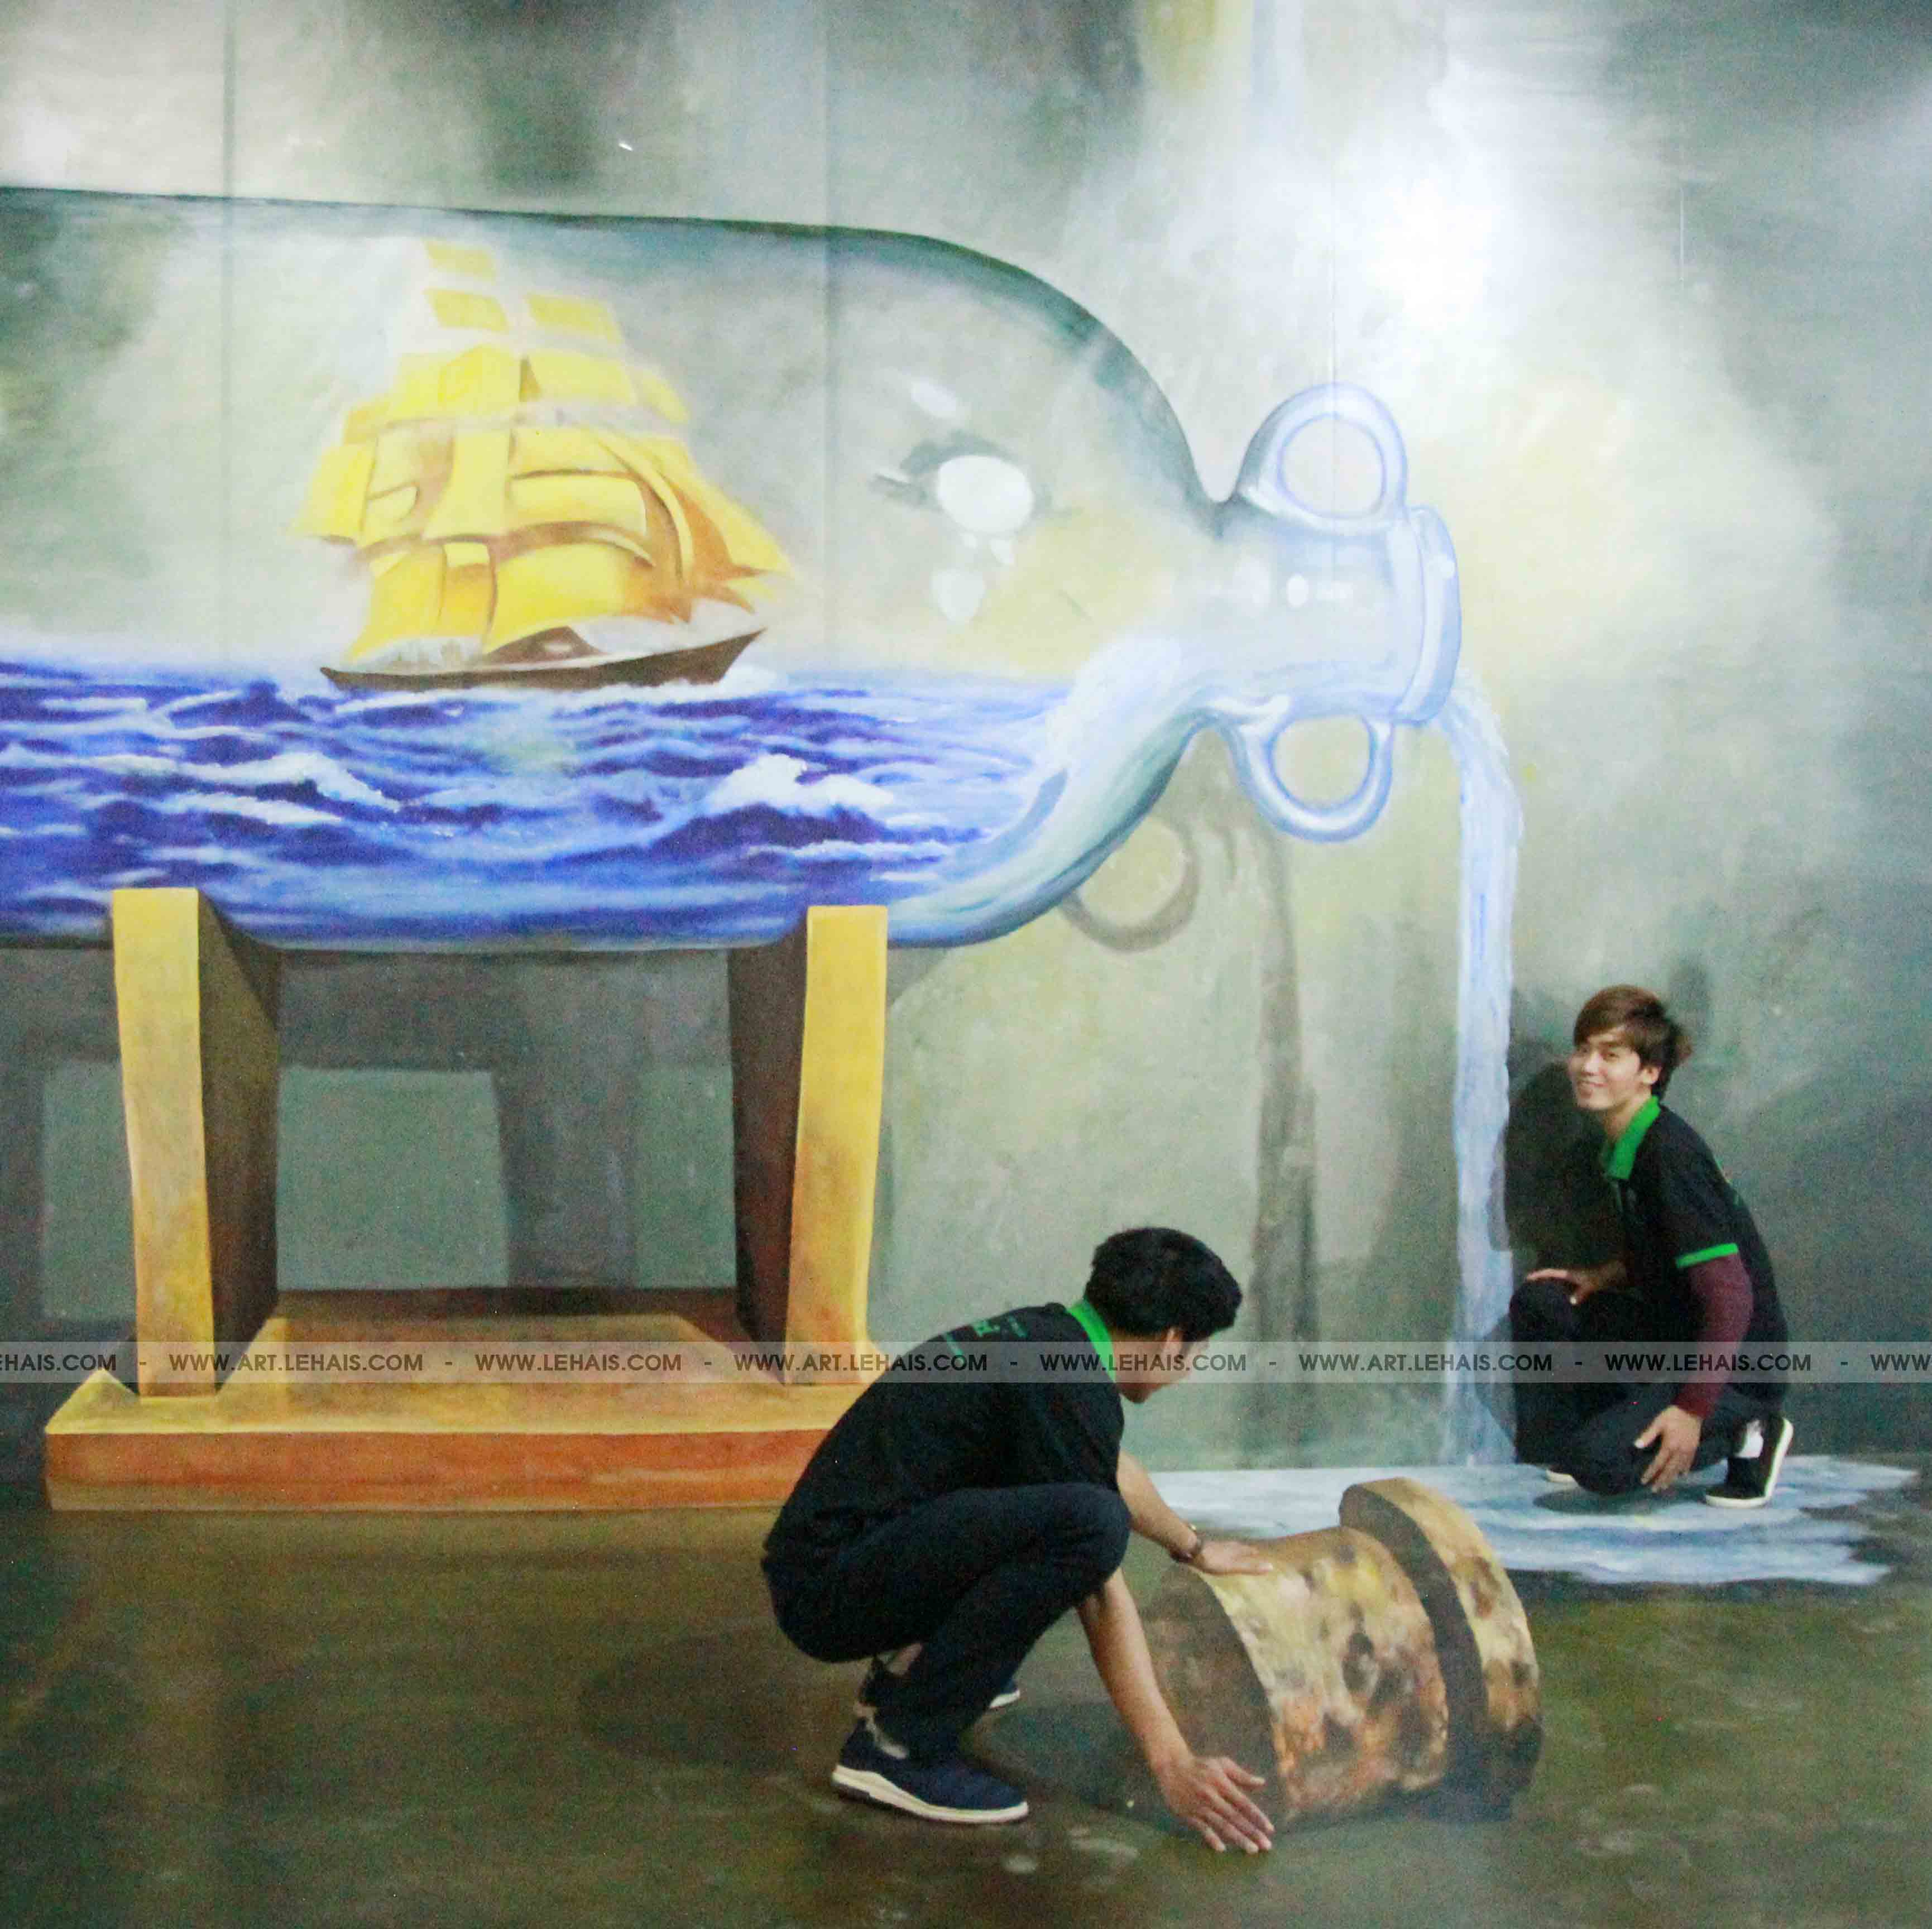 Vẽ tranh 3D tiêu đề "Bình Nước Thần Kì" tại Mipec Long Biên, Hà Nội - TT96LHAR